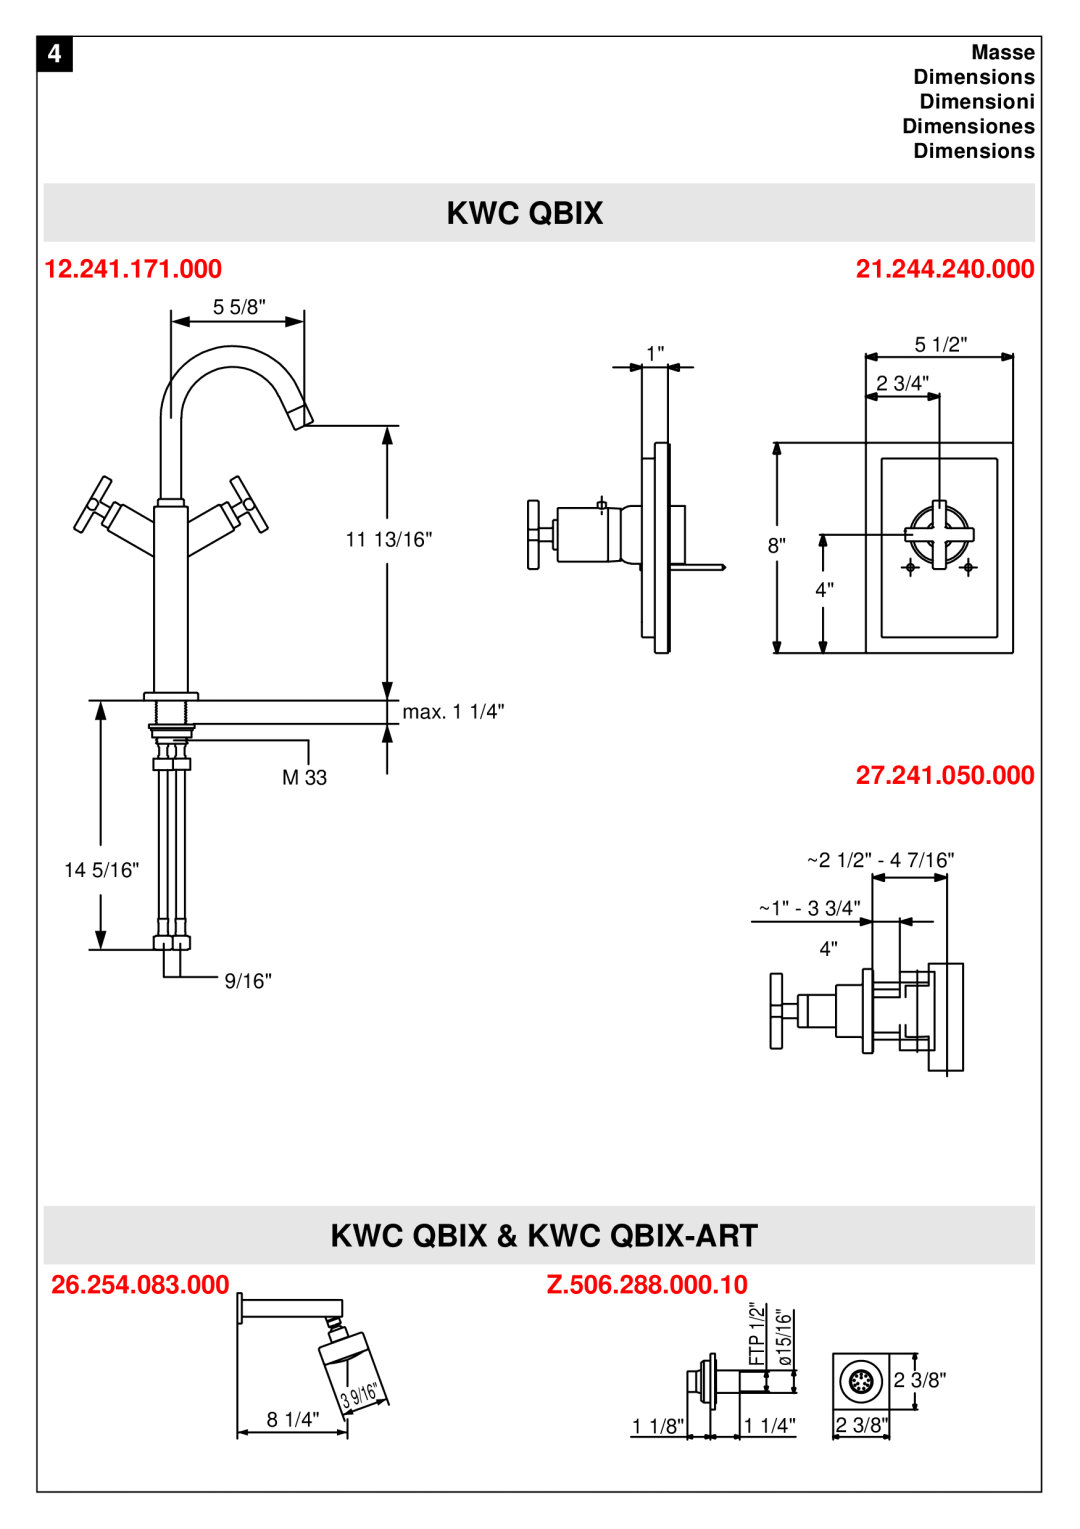 KWC KWC QBIX-ART Kwc Qbix & Kwc Qbix-Art, 12.241.171.000, 21.244.240.000, 27.241.050.000, 26.254.083.000, Z.506.288.000.10 